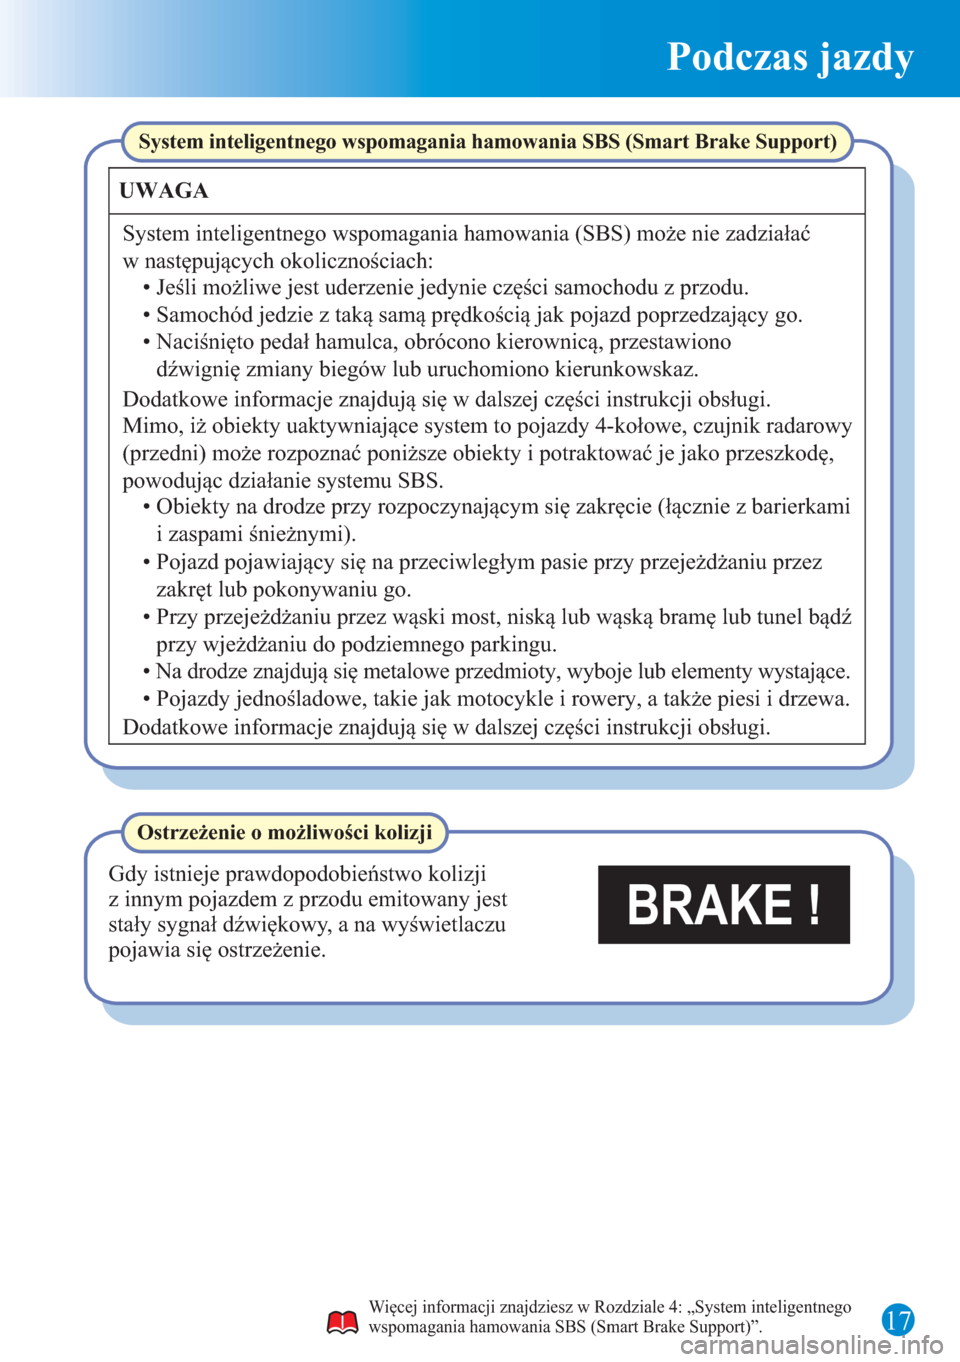 MAZDA MODEL 3 HATCHBACK 2015  Krótki Przewodnik (in polish) Podczas jazdy
17
System inteligentnego wspomagania hamowania SBS (Smart Brake Support)
UWAGA
System inteligentnego wspomagania hamowania (SBS) może nie zadziałać 
w następujących okolicznościach